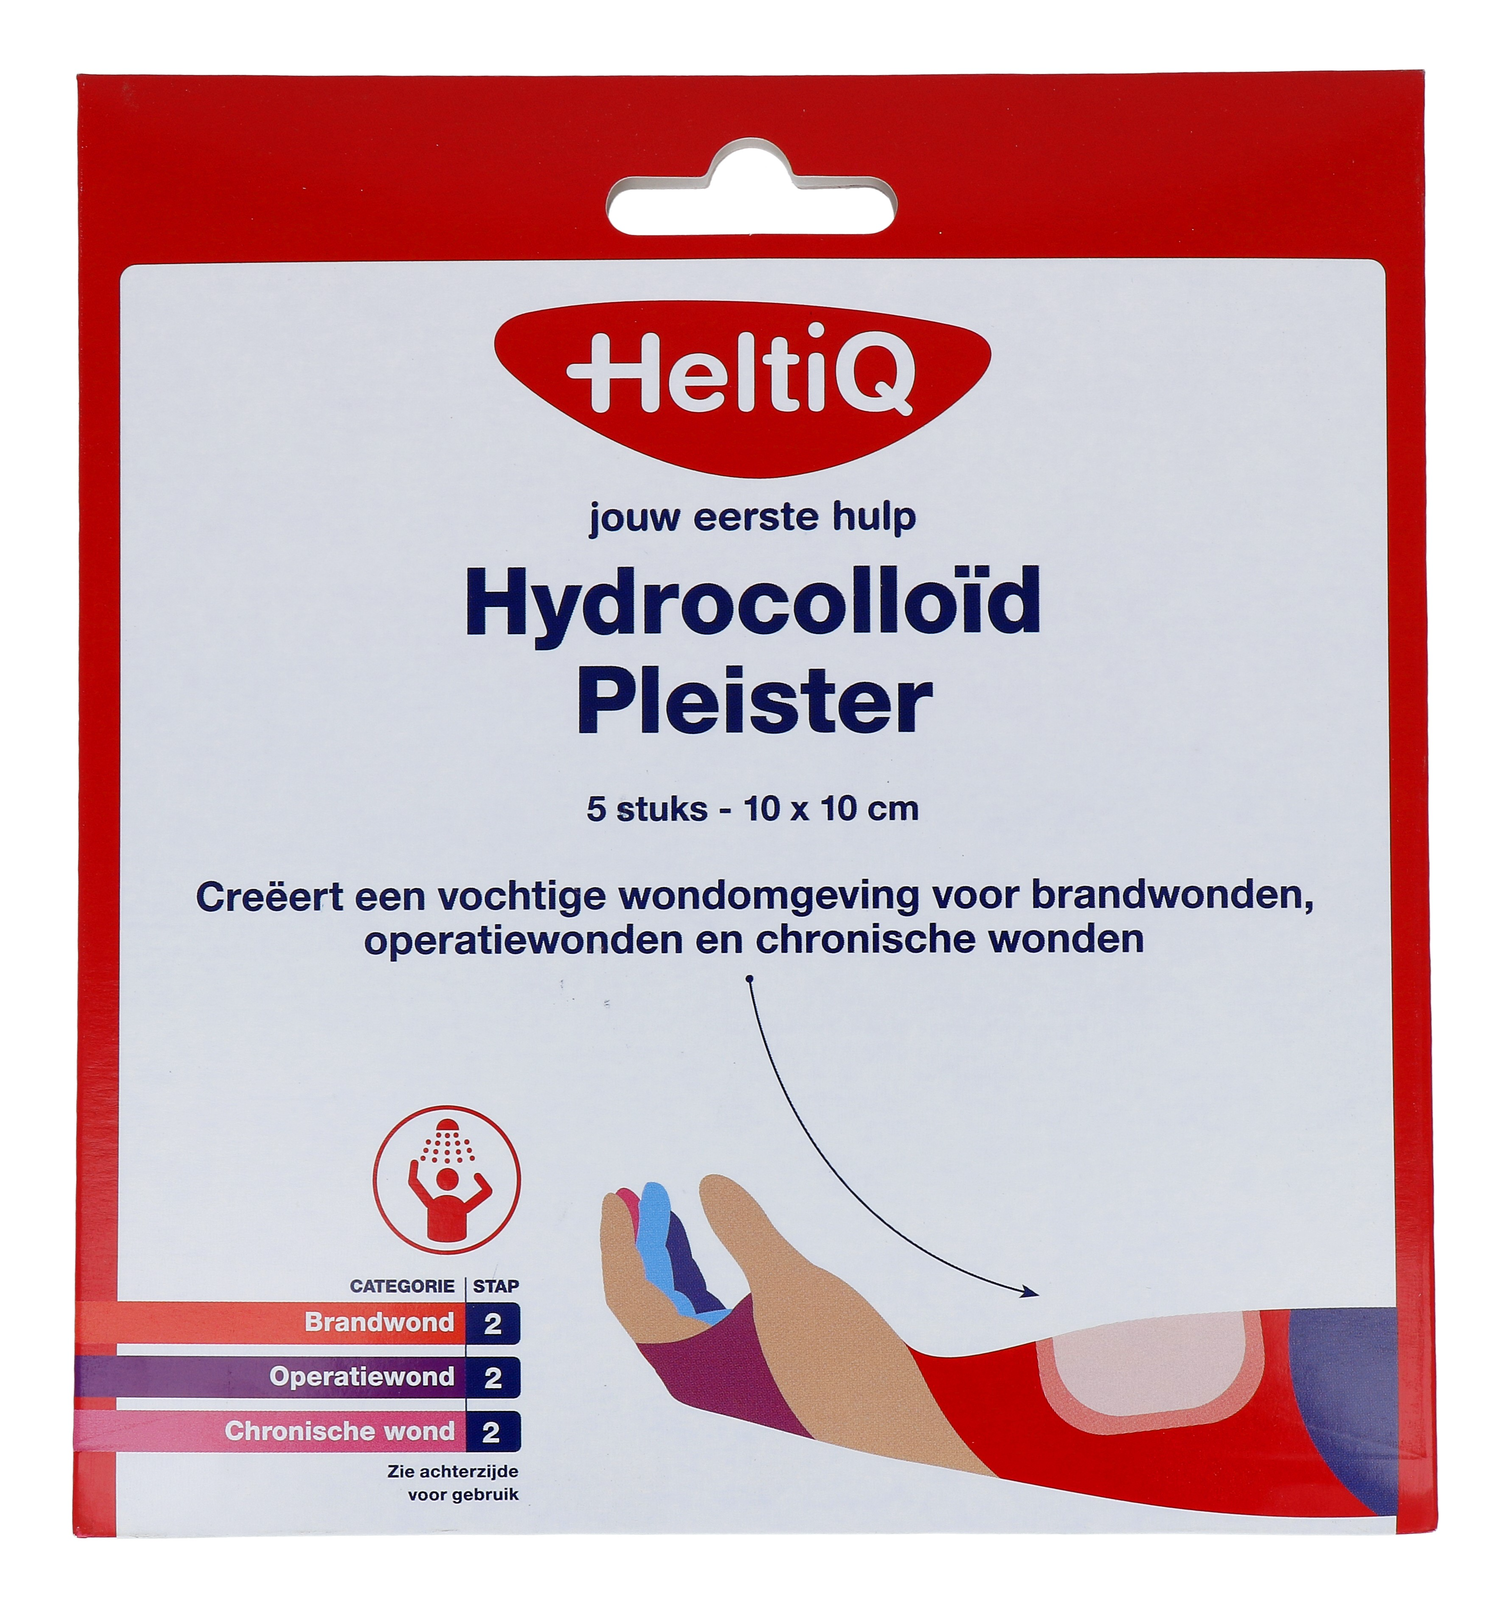 Image of Heltiq Hydrocolloid Pleister